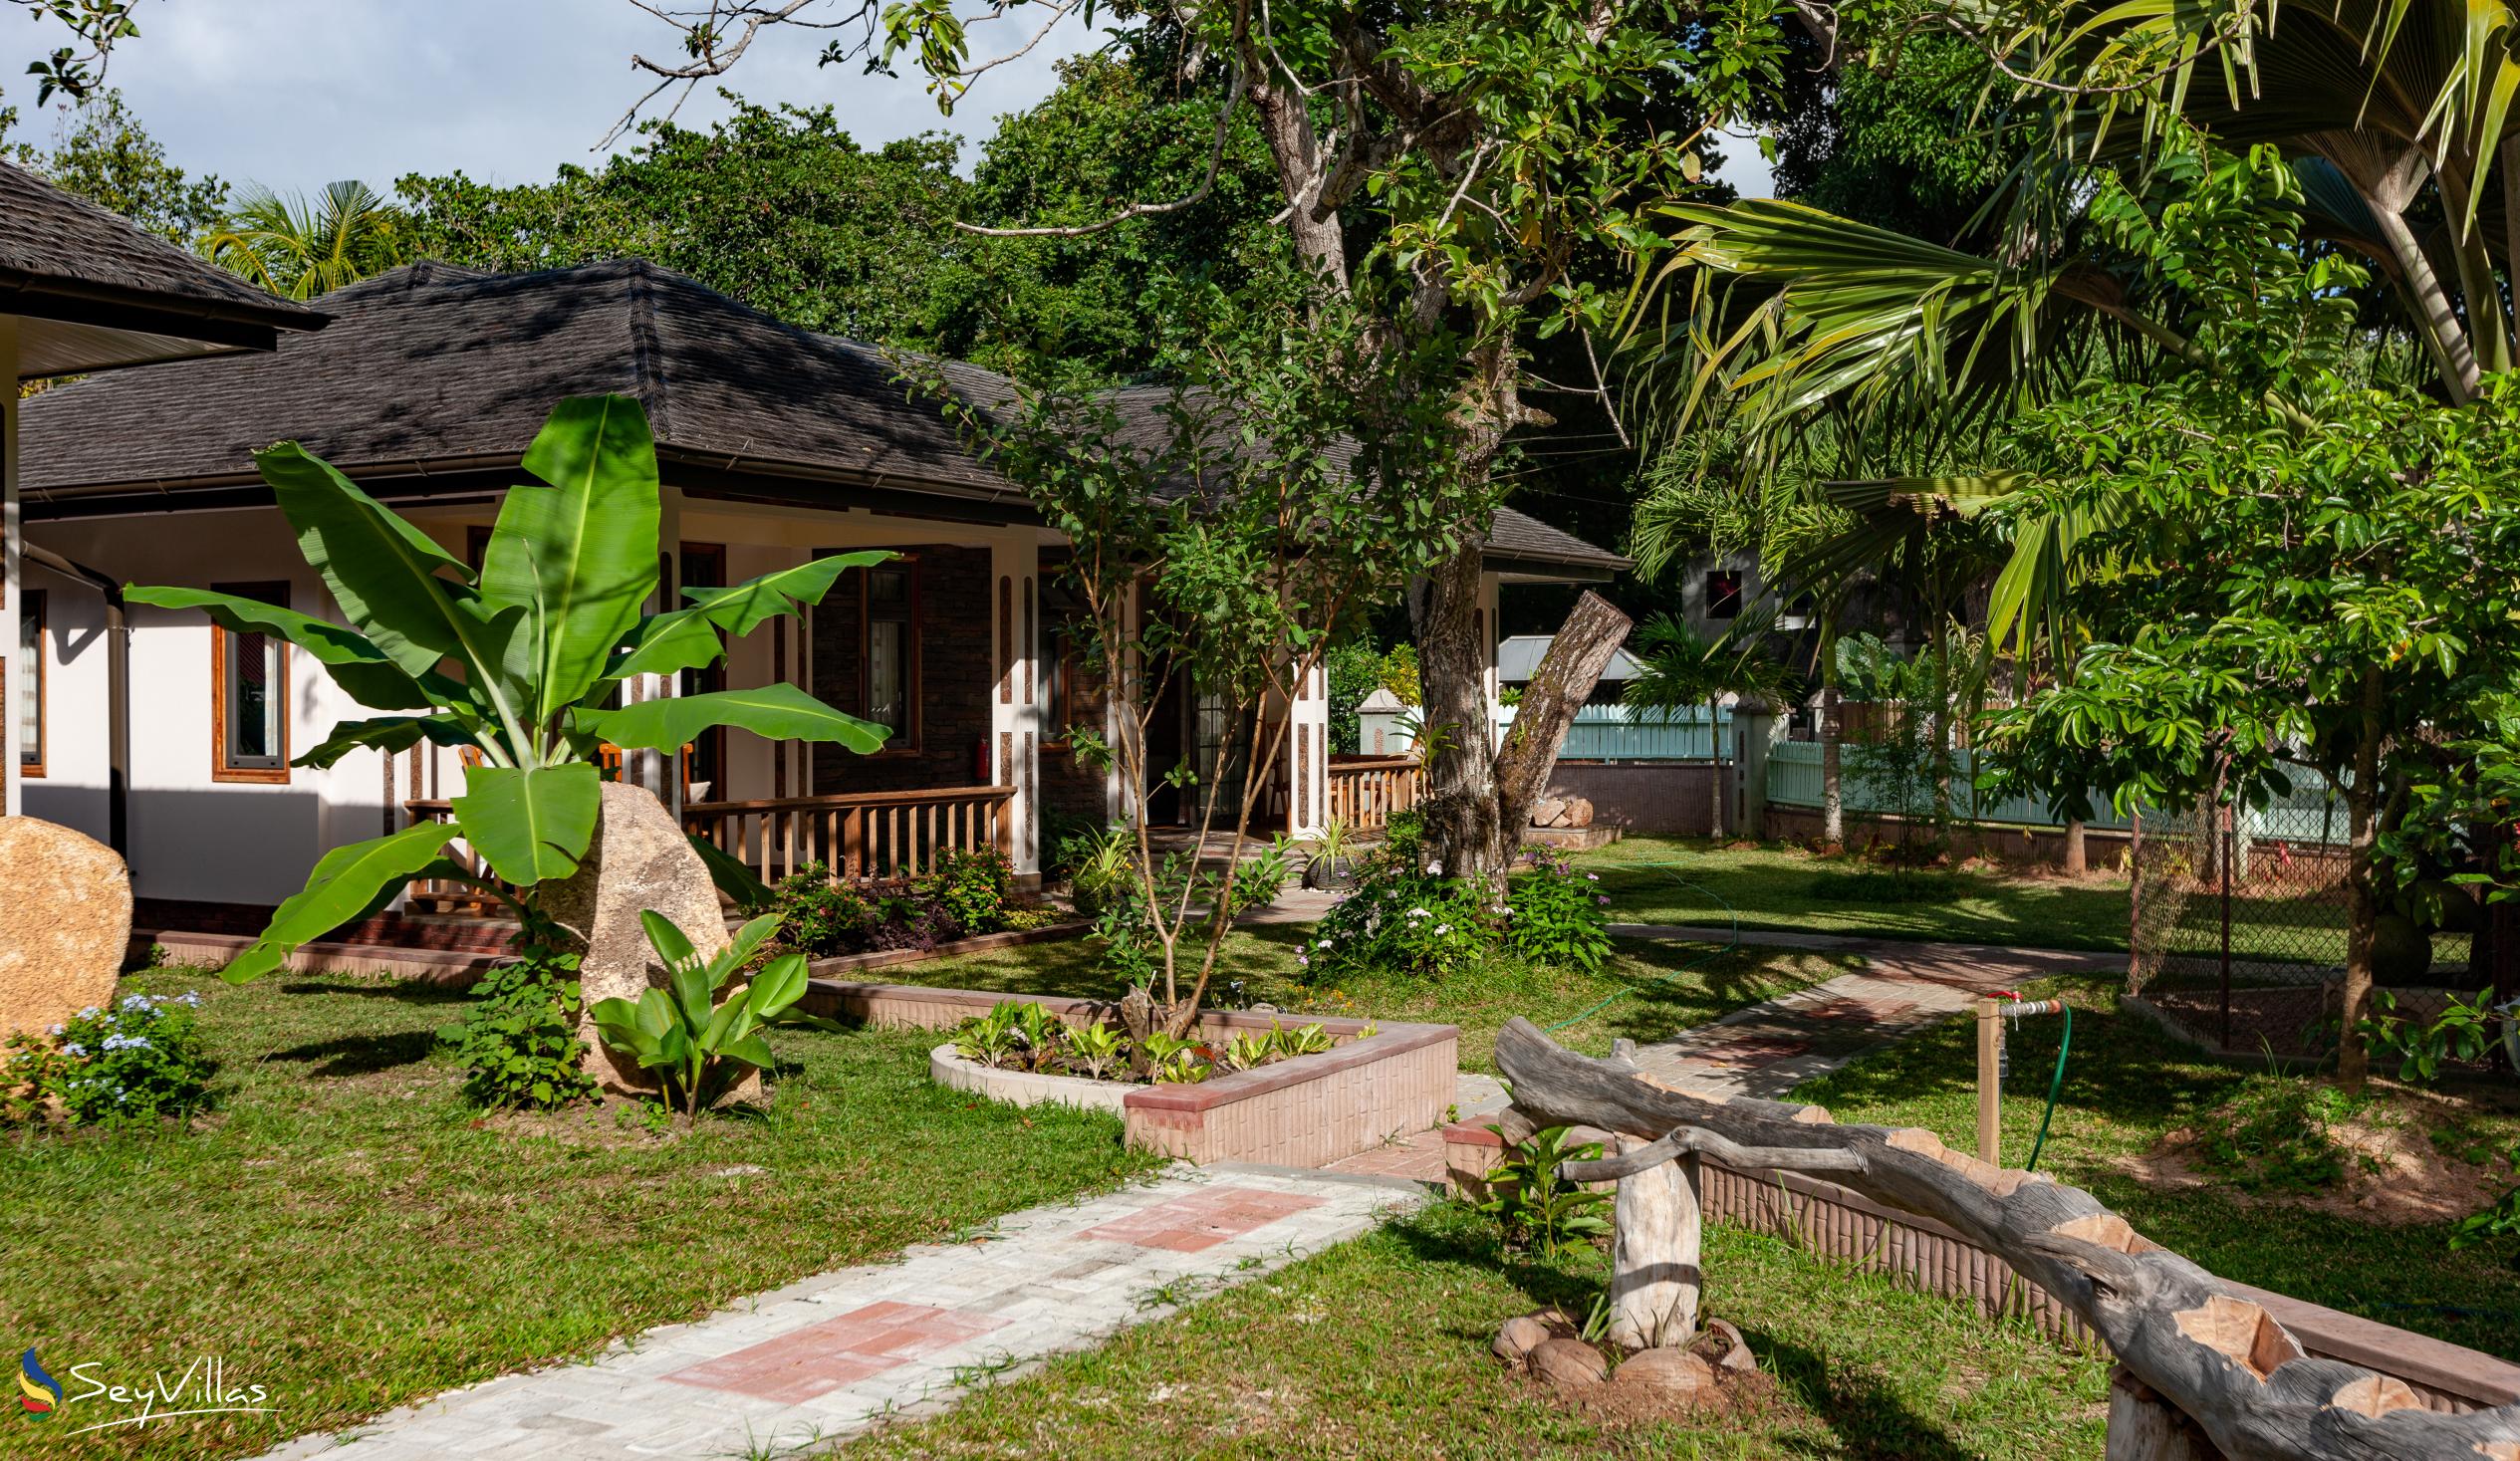 Photo 9: Calou Guesthouse - Outdoor area - La Digue (Seychelles)